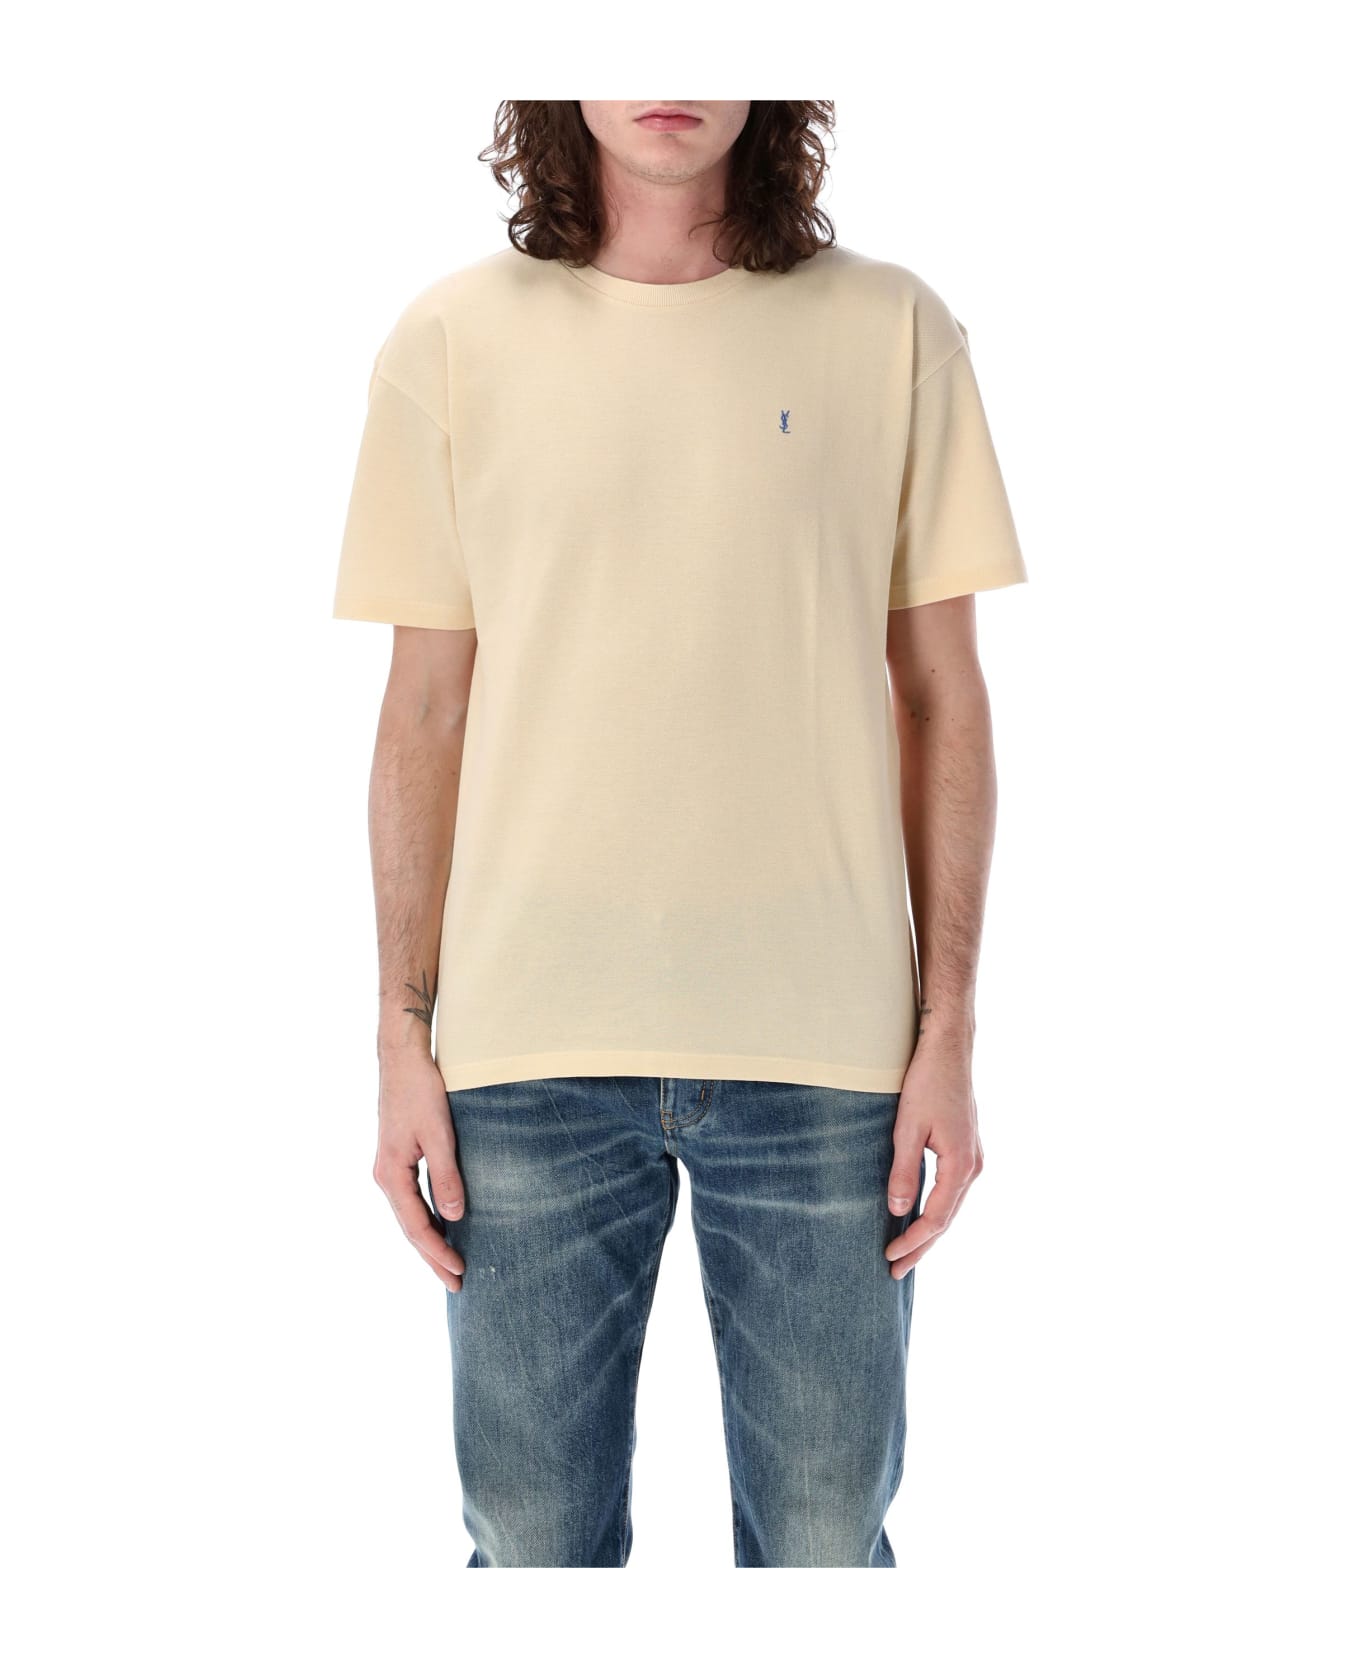 Saint Laurent Piquet T-shirt - JAUNE/BLEU